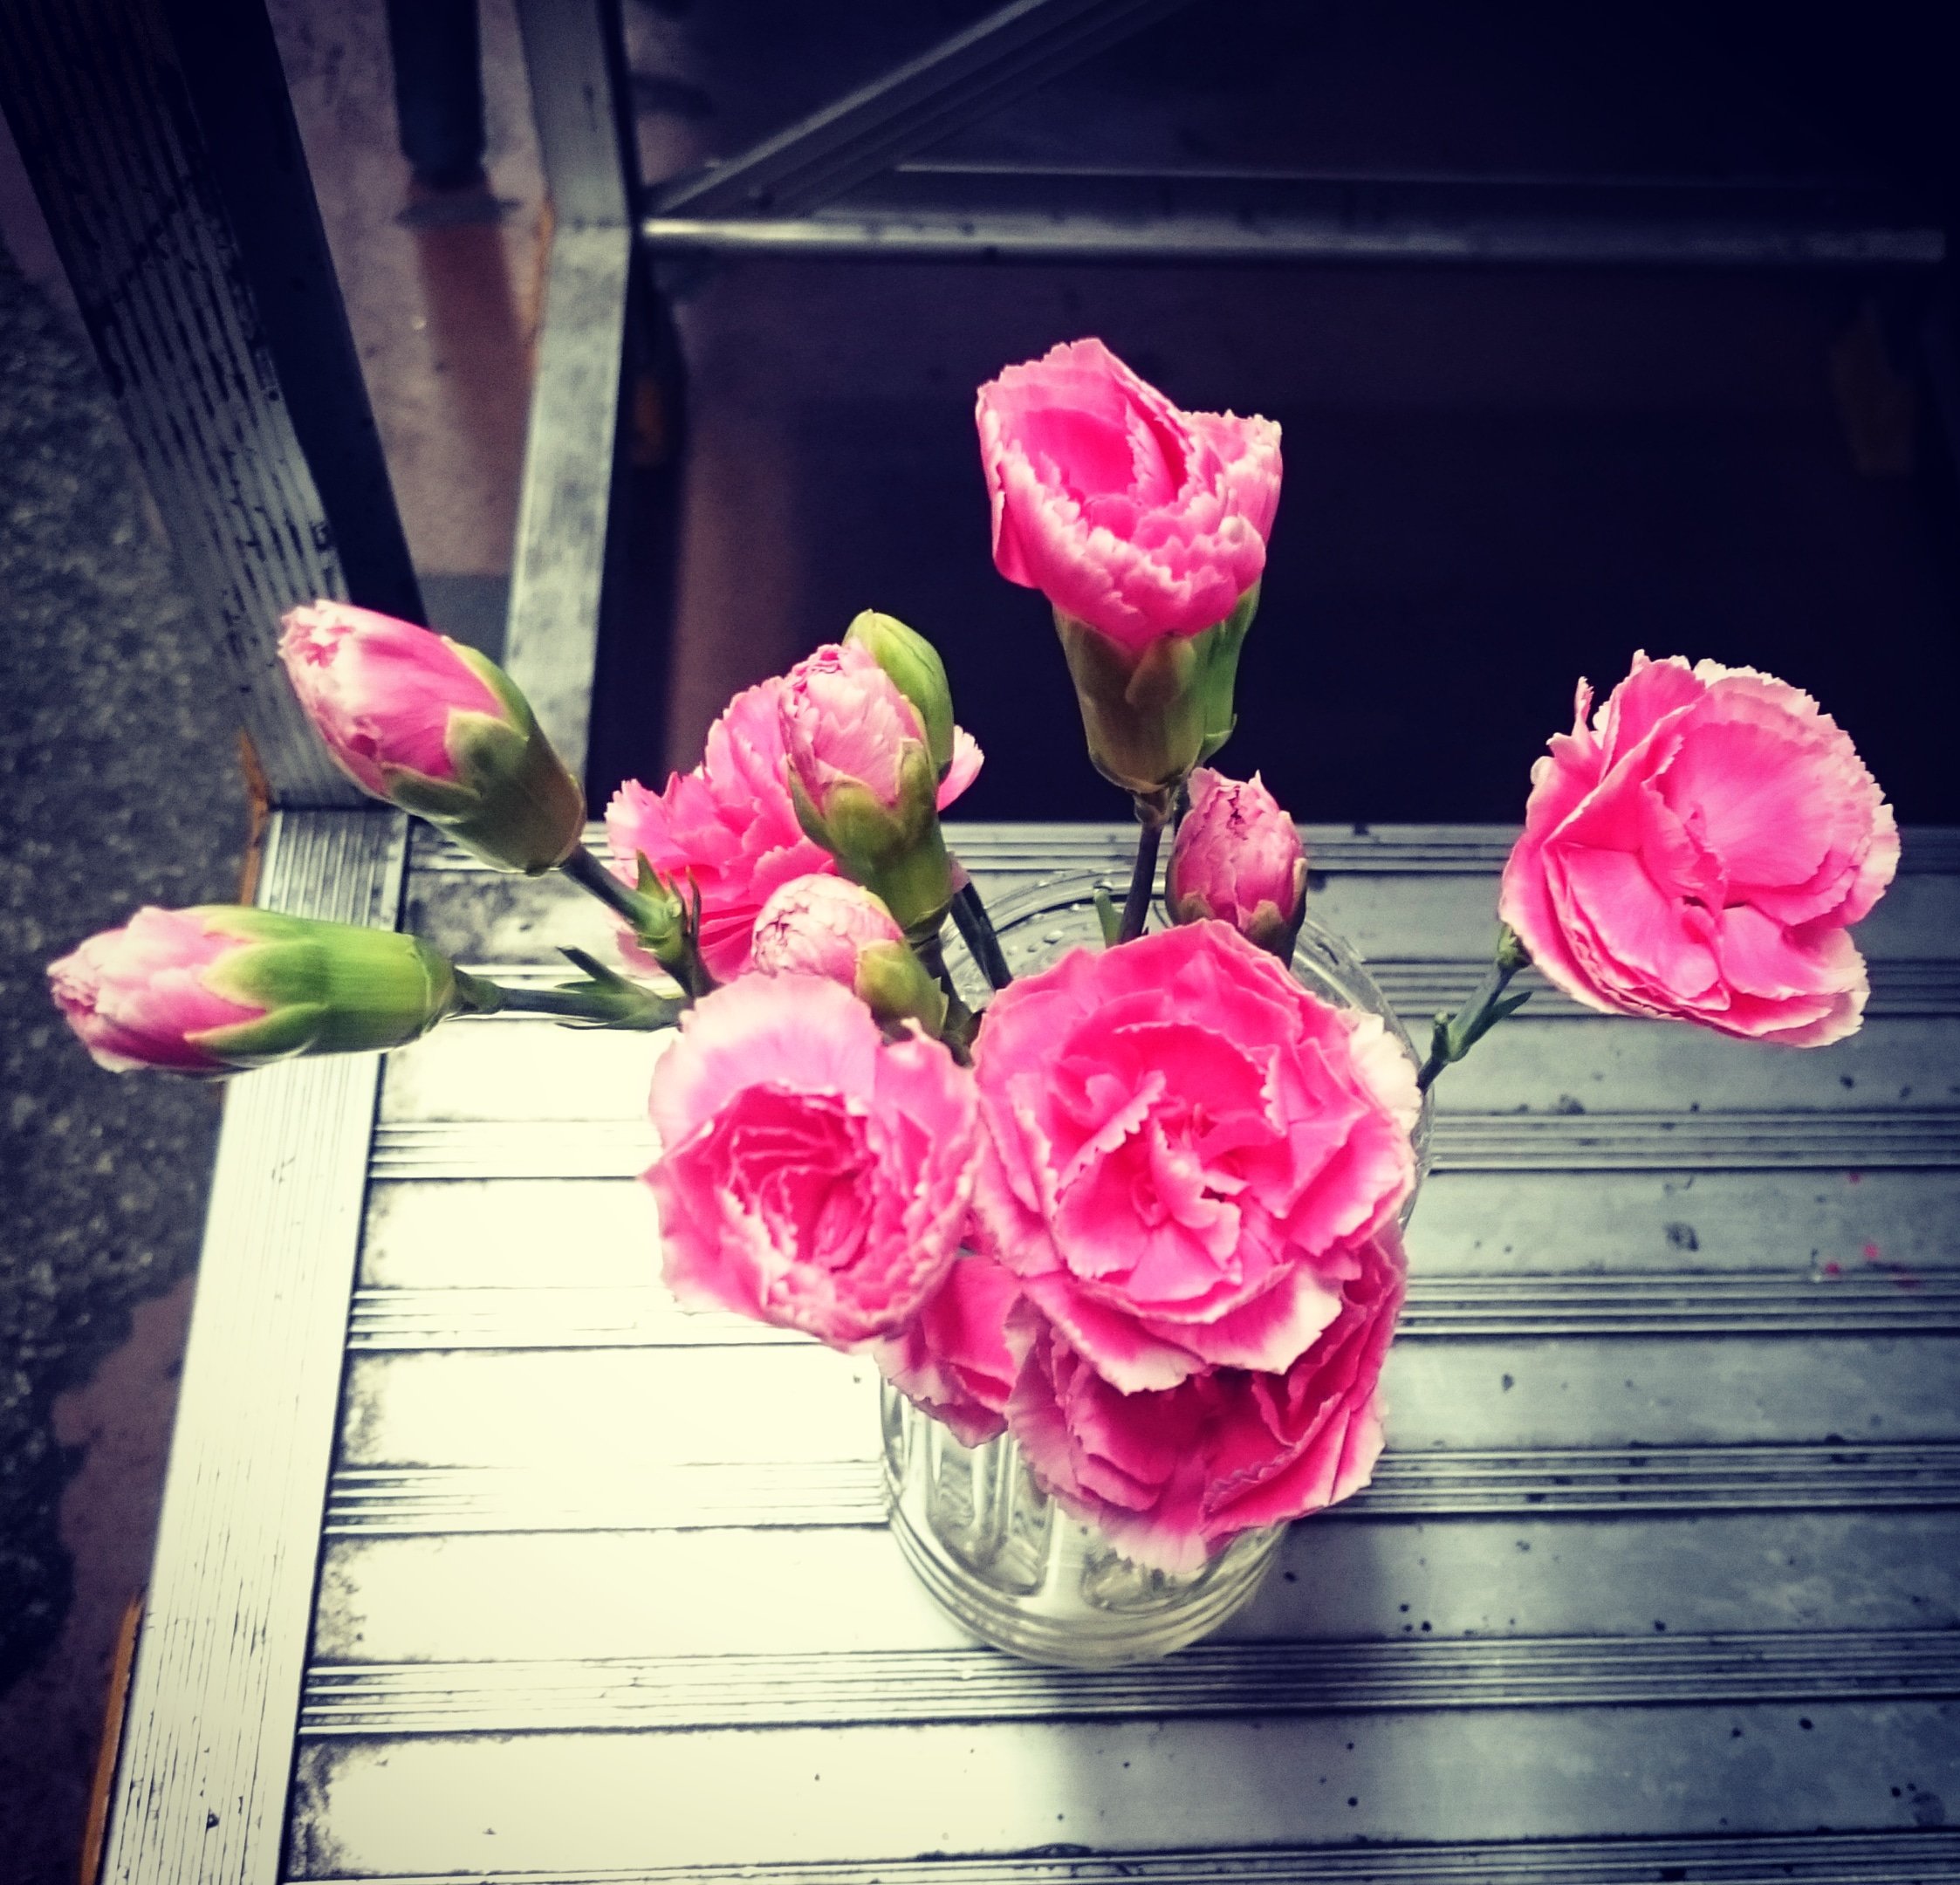 競馬ニホン歳時記 前夜通信社公式 ウィークエンドの花言葉 スプレーカーネーションは 純粋な愛情 の花言葉 大好きな母に贈りたい今週の花です スプレーカーネーション 花言葉 母の日 T Co 4tqpoknife Twitter